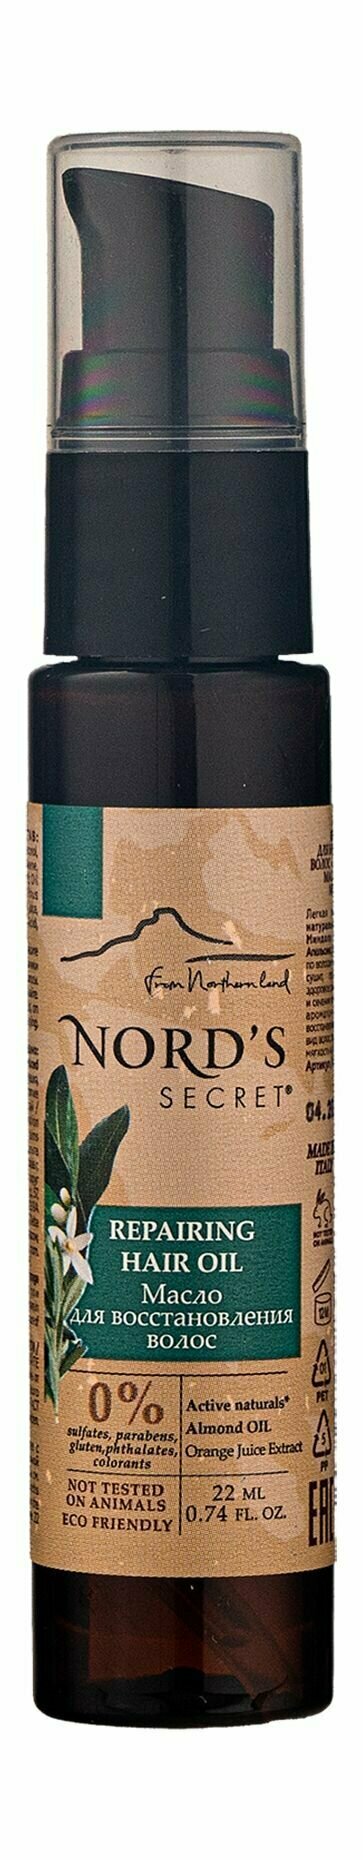 Восстанавливающее масло для волос с миндалем и нероли / Nords Secret Repairing Hair Oil Neroli Flower and Almond